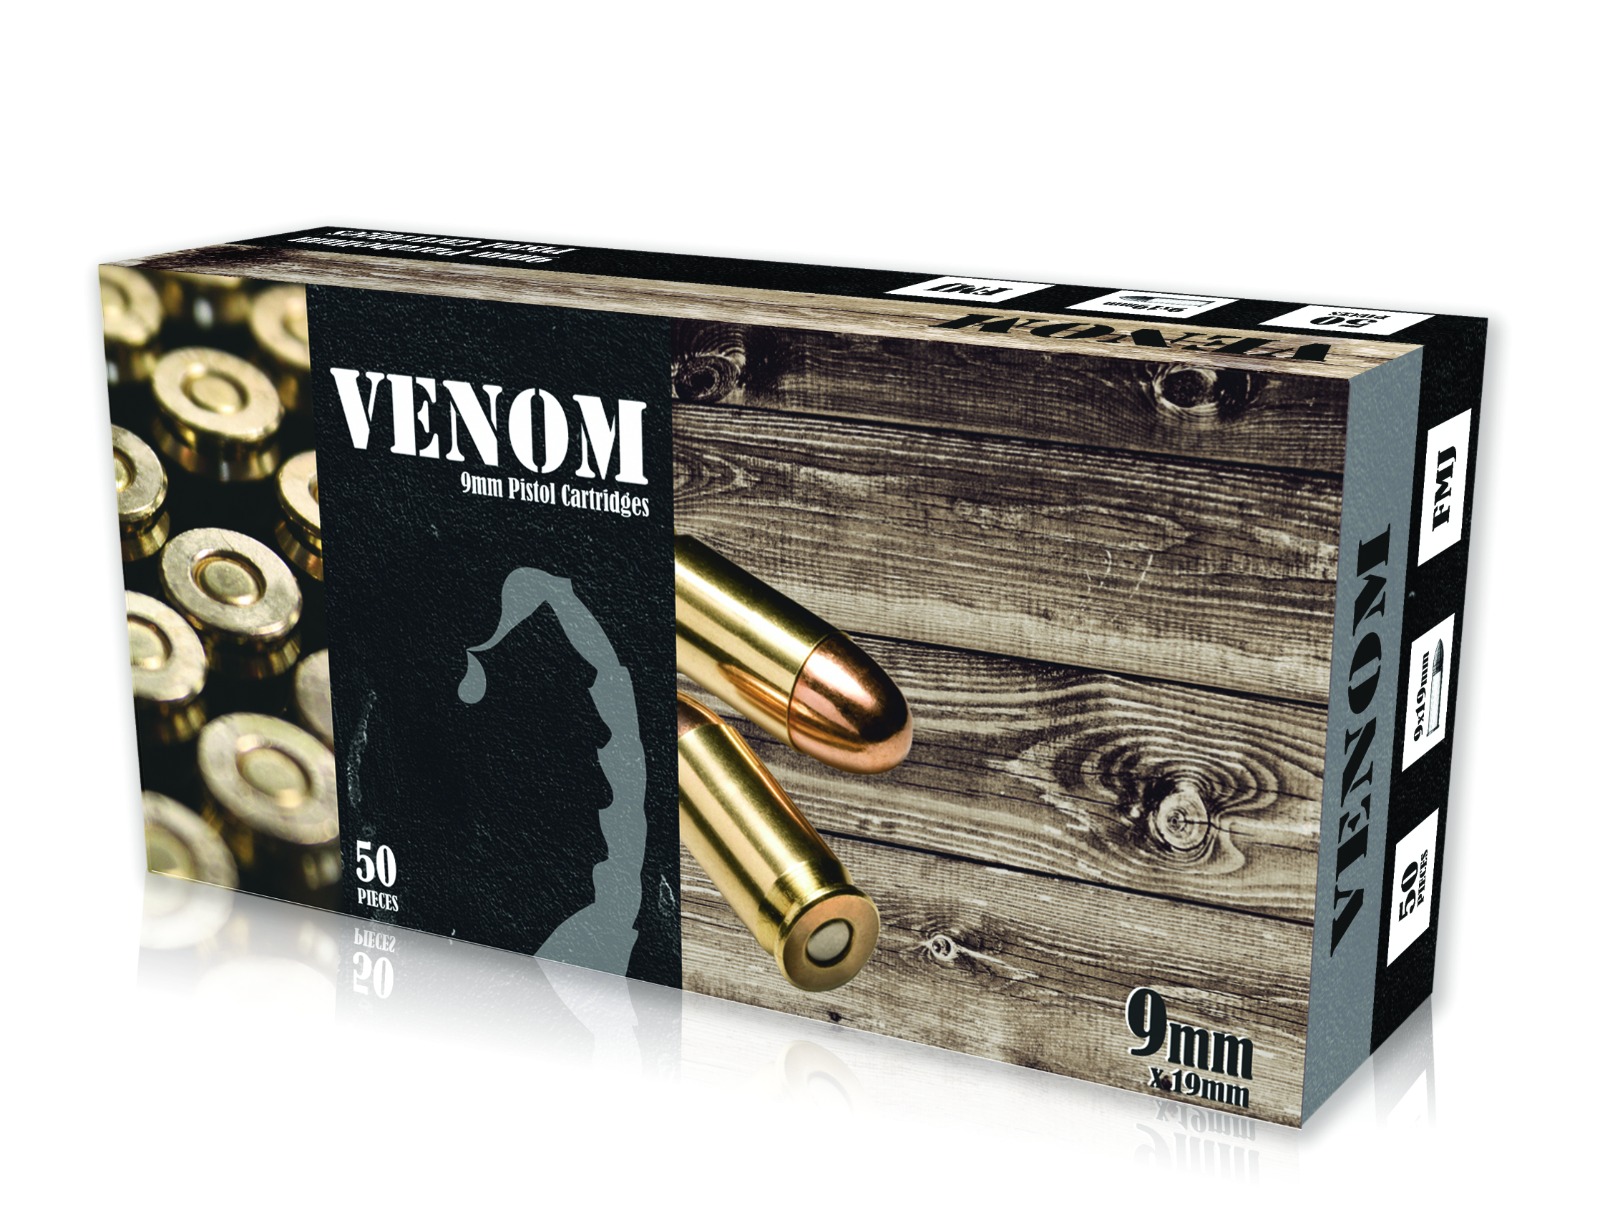 Venom 9mm 115 gr